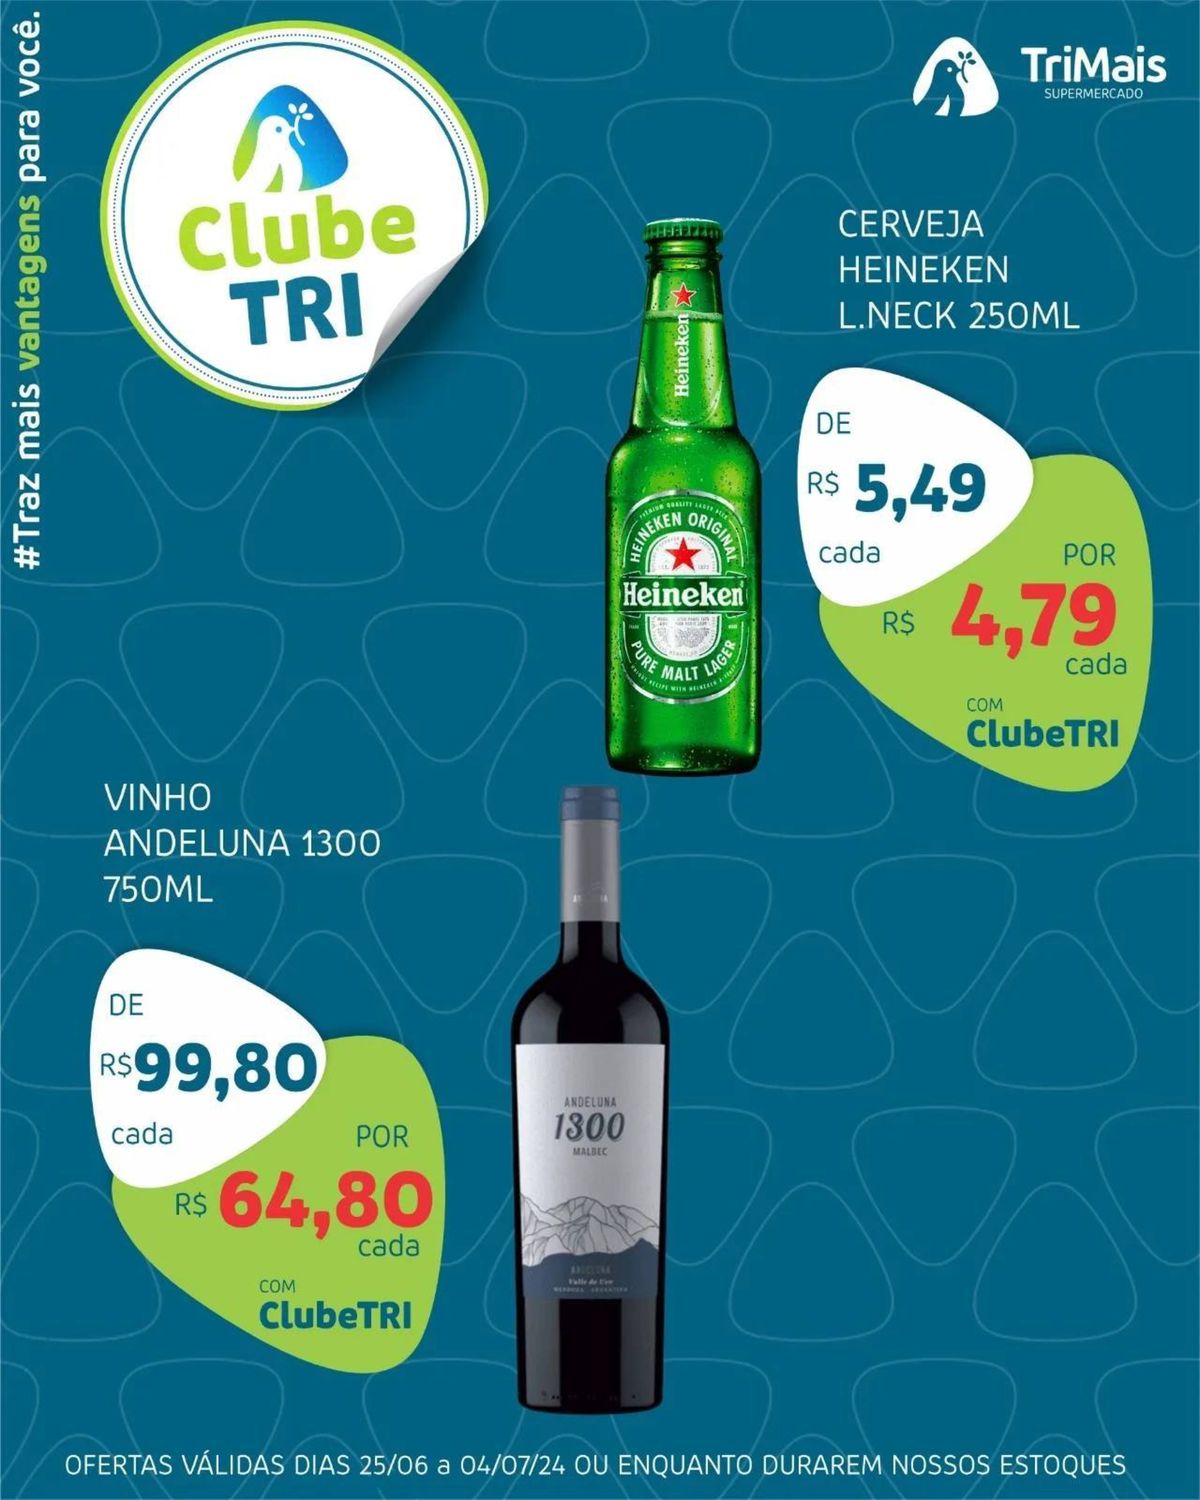 Cerveja Heineken e Vinho Andeluna em promoção